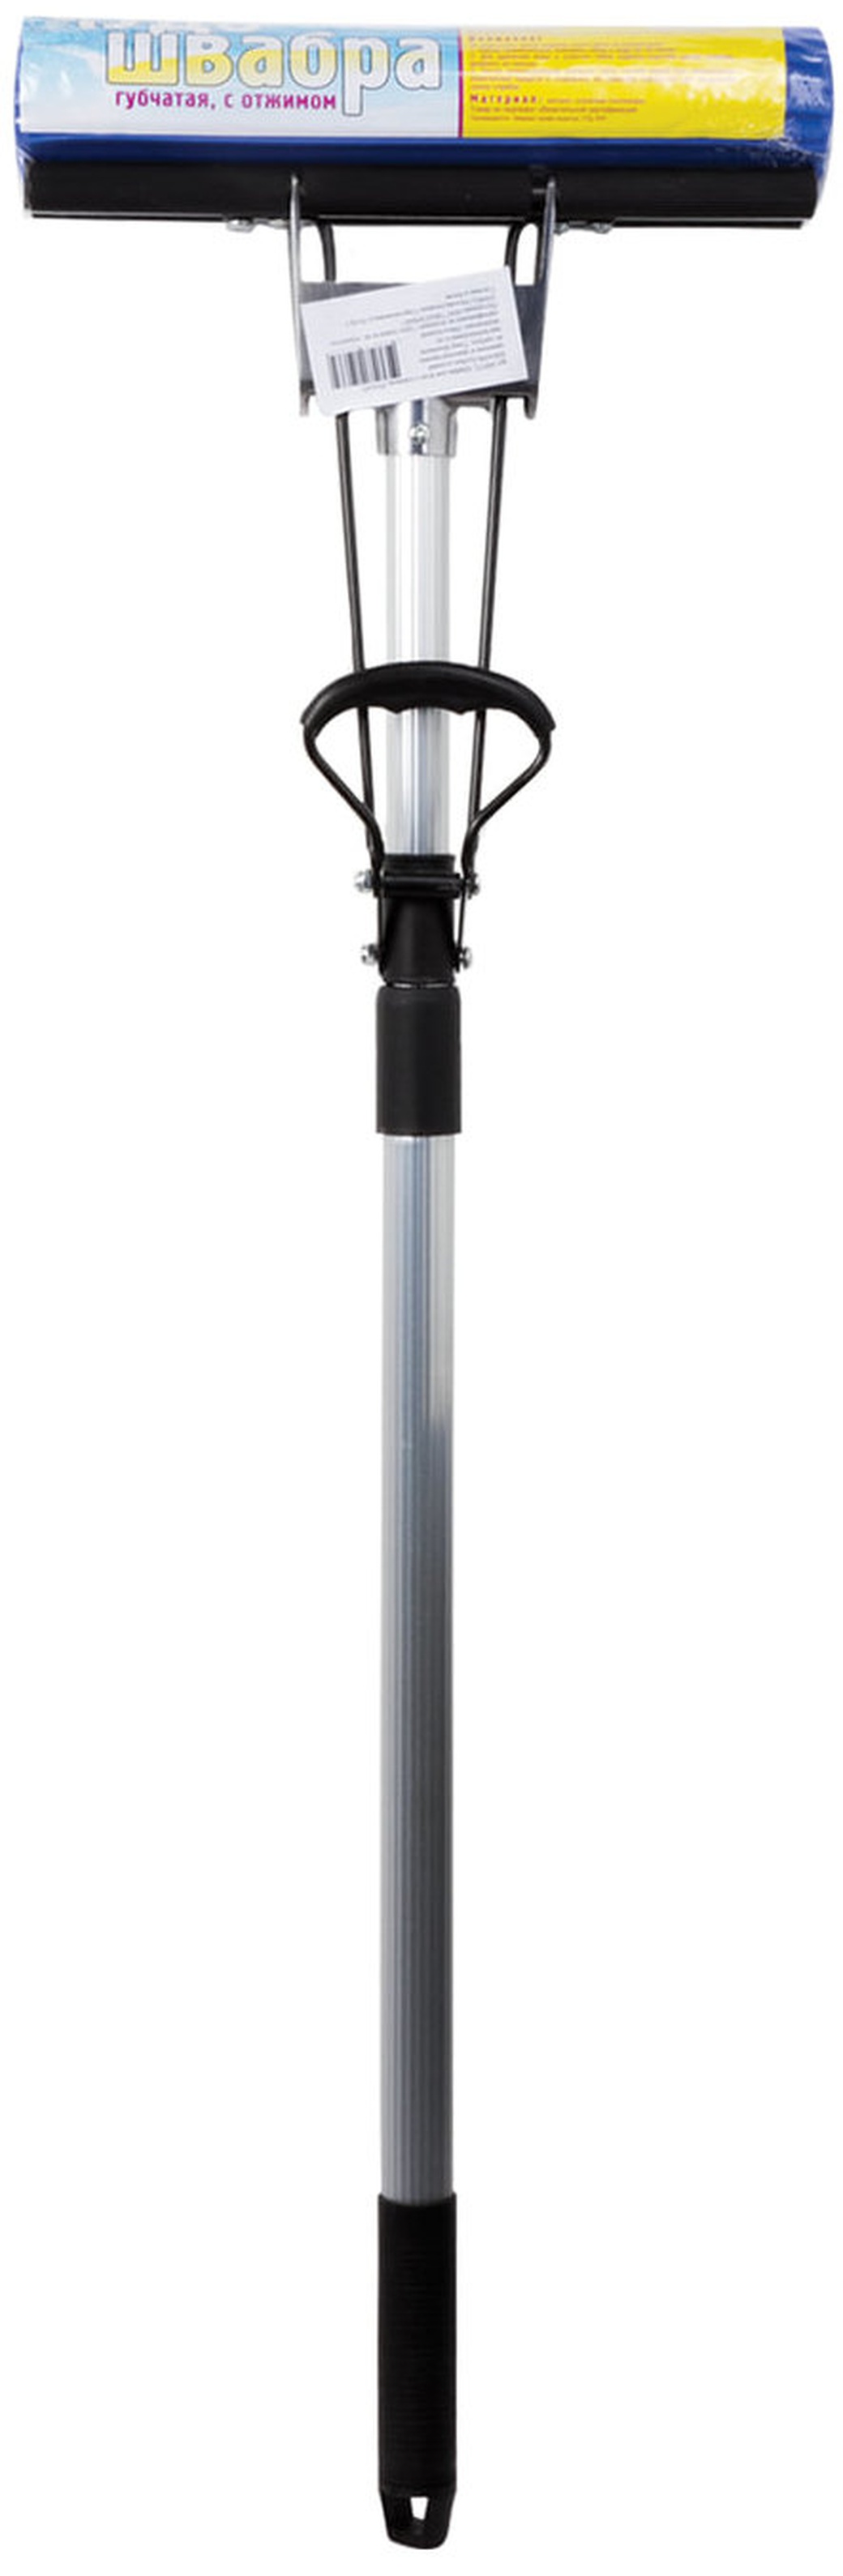 Швабра самоотжимная, роликовый отжим, насадка PVA 27 см, телескопический черенок 120 см, Экомоп, PVA-07,ШВА098 фото